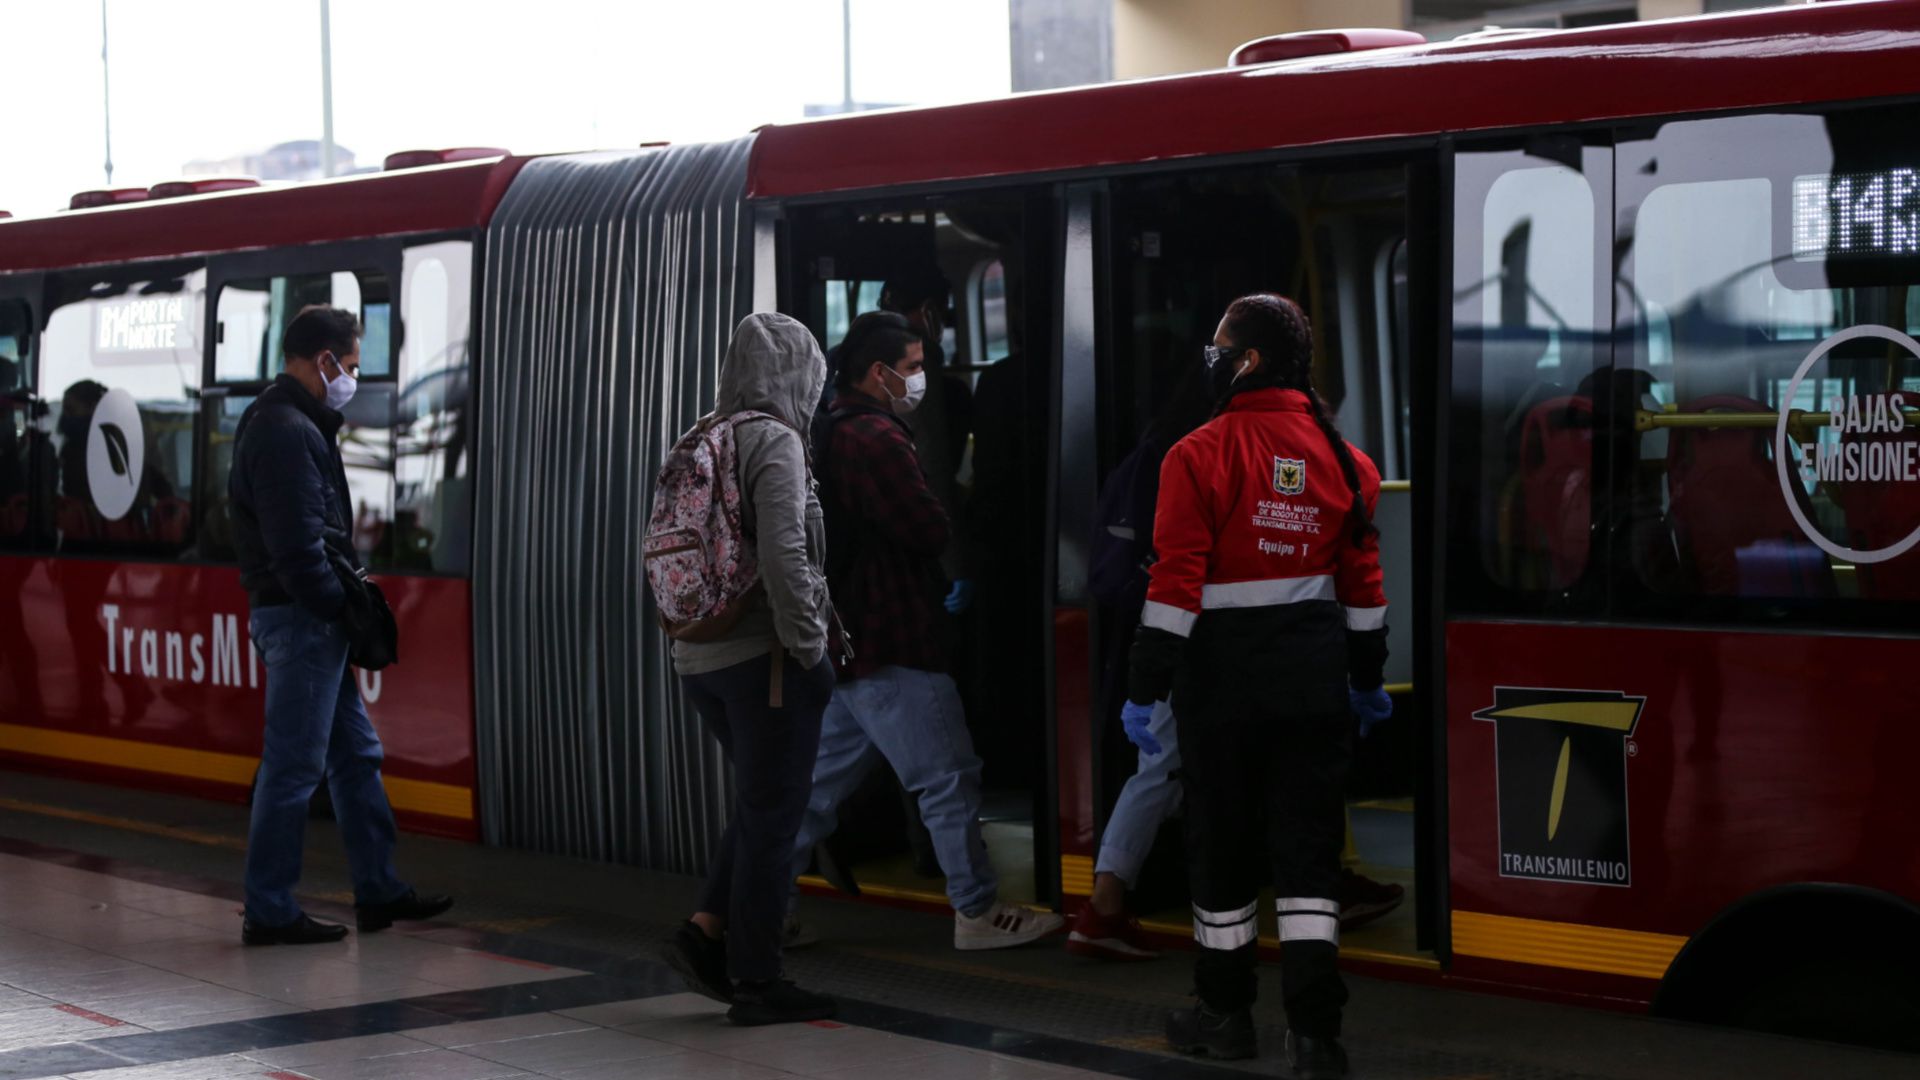 El directivo confirmó que Bogotá tiene la flota más grande adjudicada del mundo en buses eléctricos, fuera de China. Vía: Colprensa